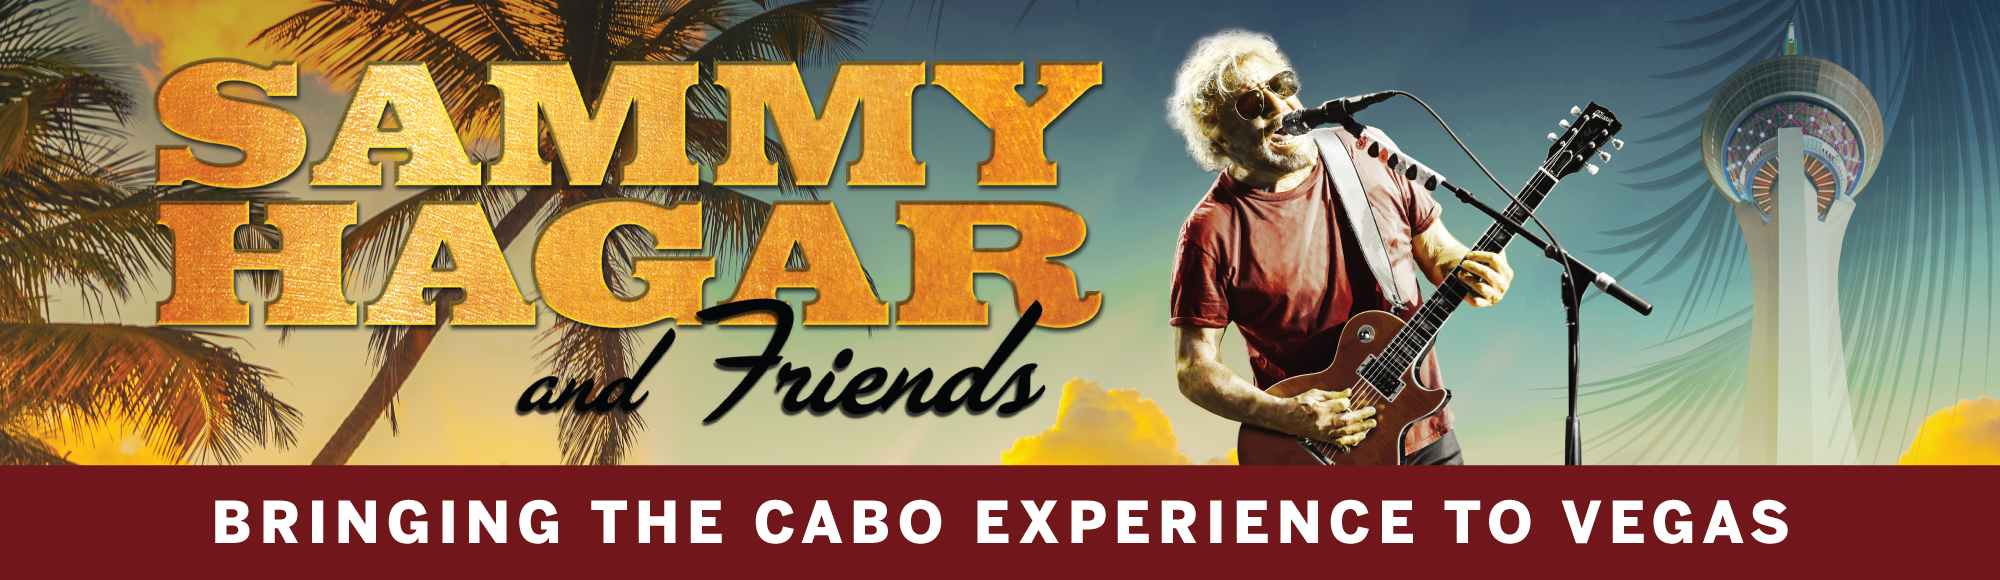 Sammy Hagar & Friends featuring the WABOS show